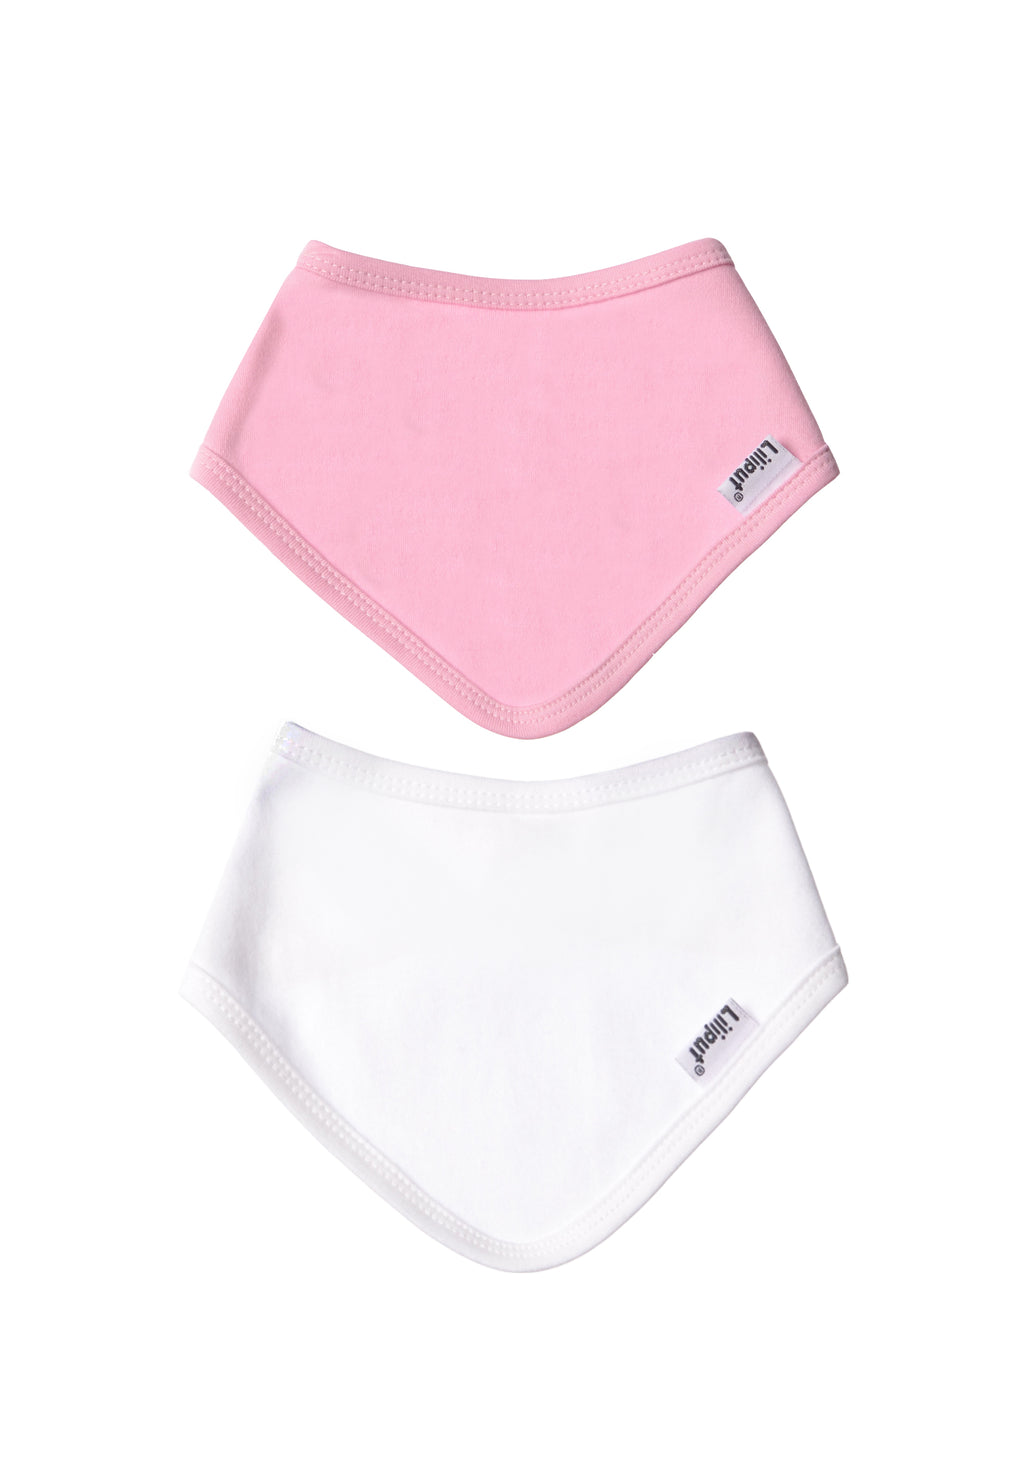 Bio Baumwollset bestehend aus Langarmshirt in rosa und passenden Halstüchern (2Stk.) in rosa und weiß.